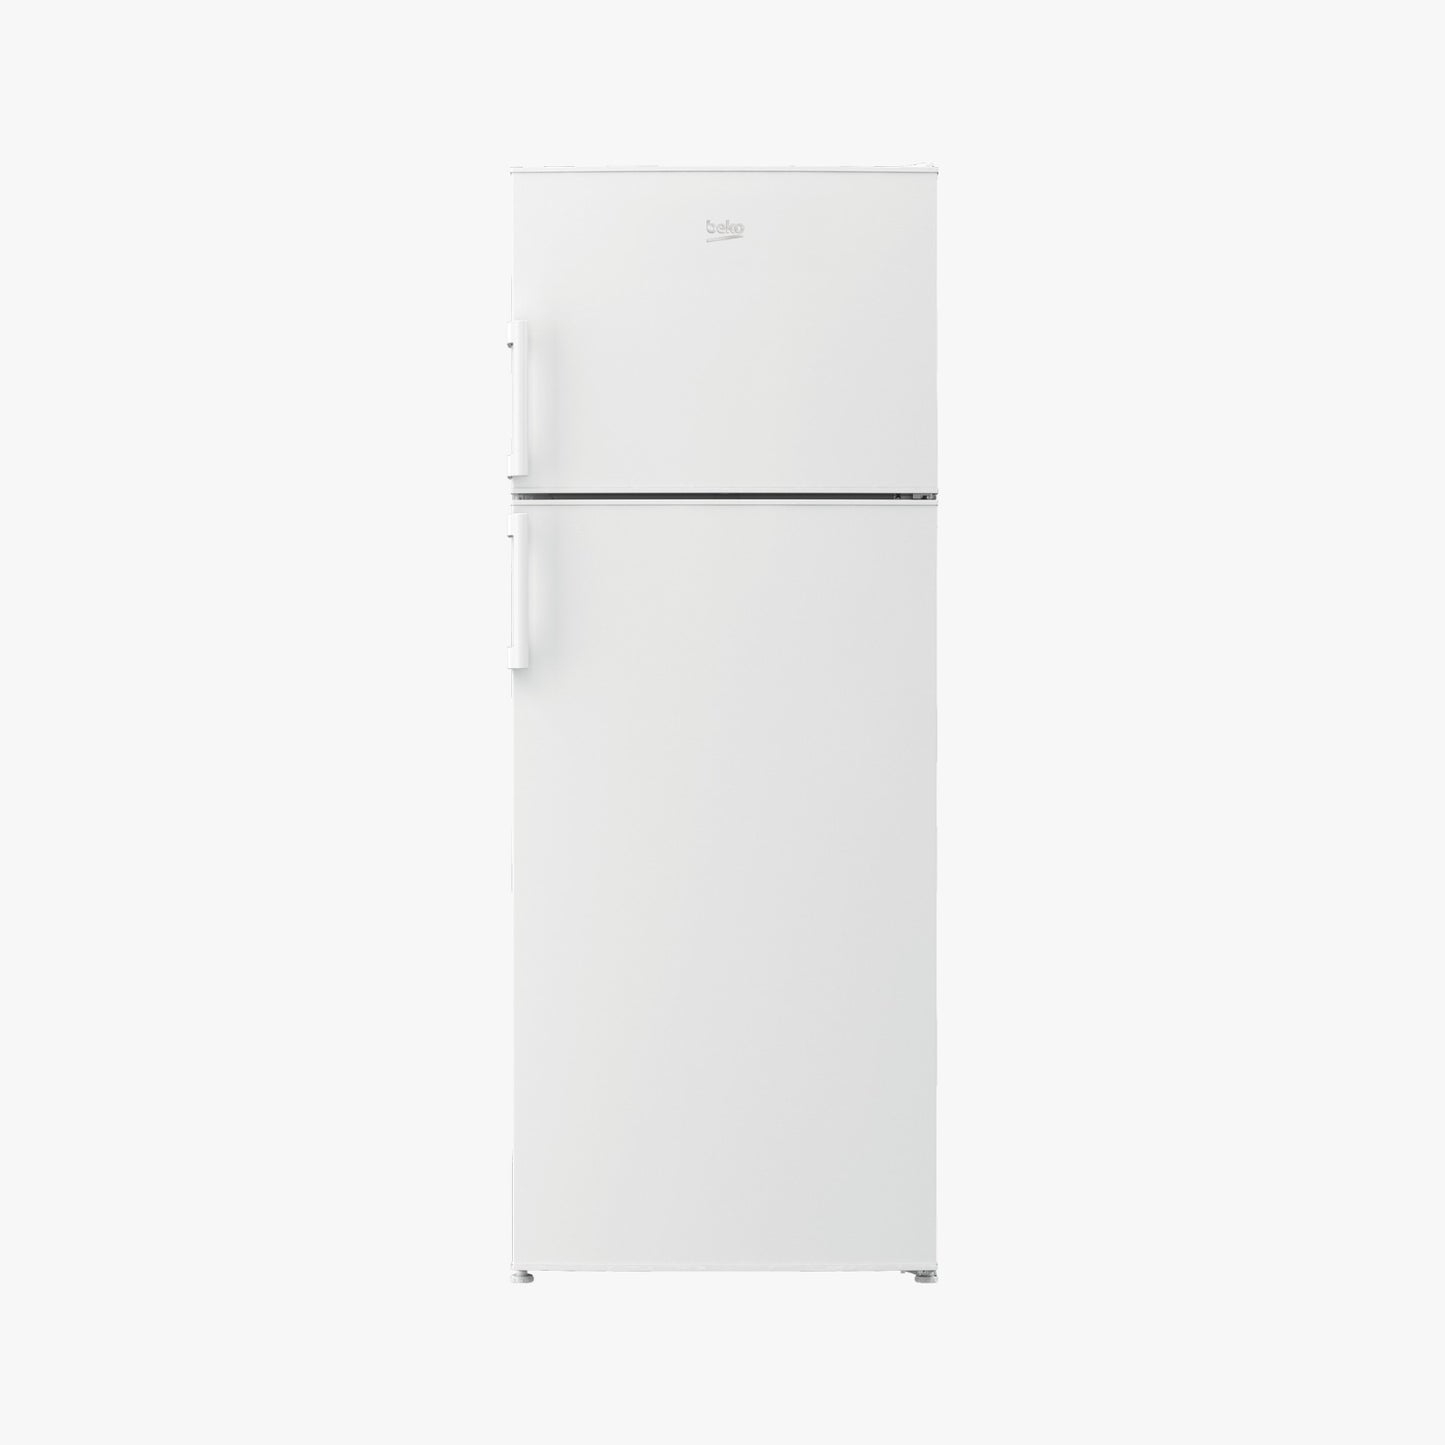 Beko 437L Double Door Refrigerator, RDP 7501 W